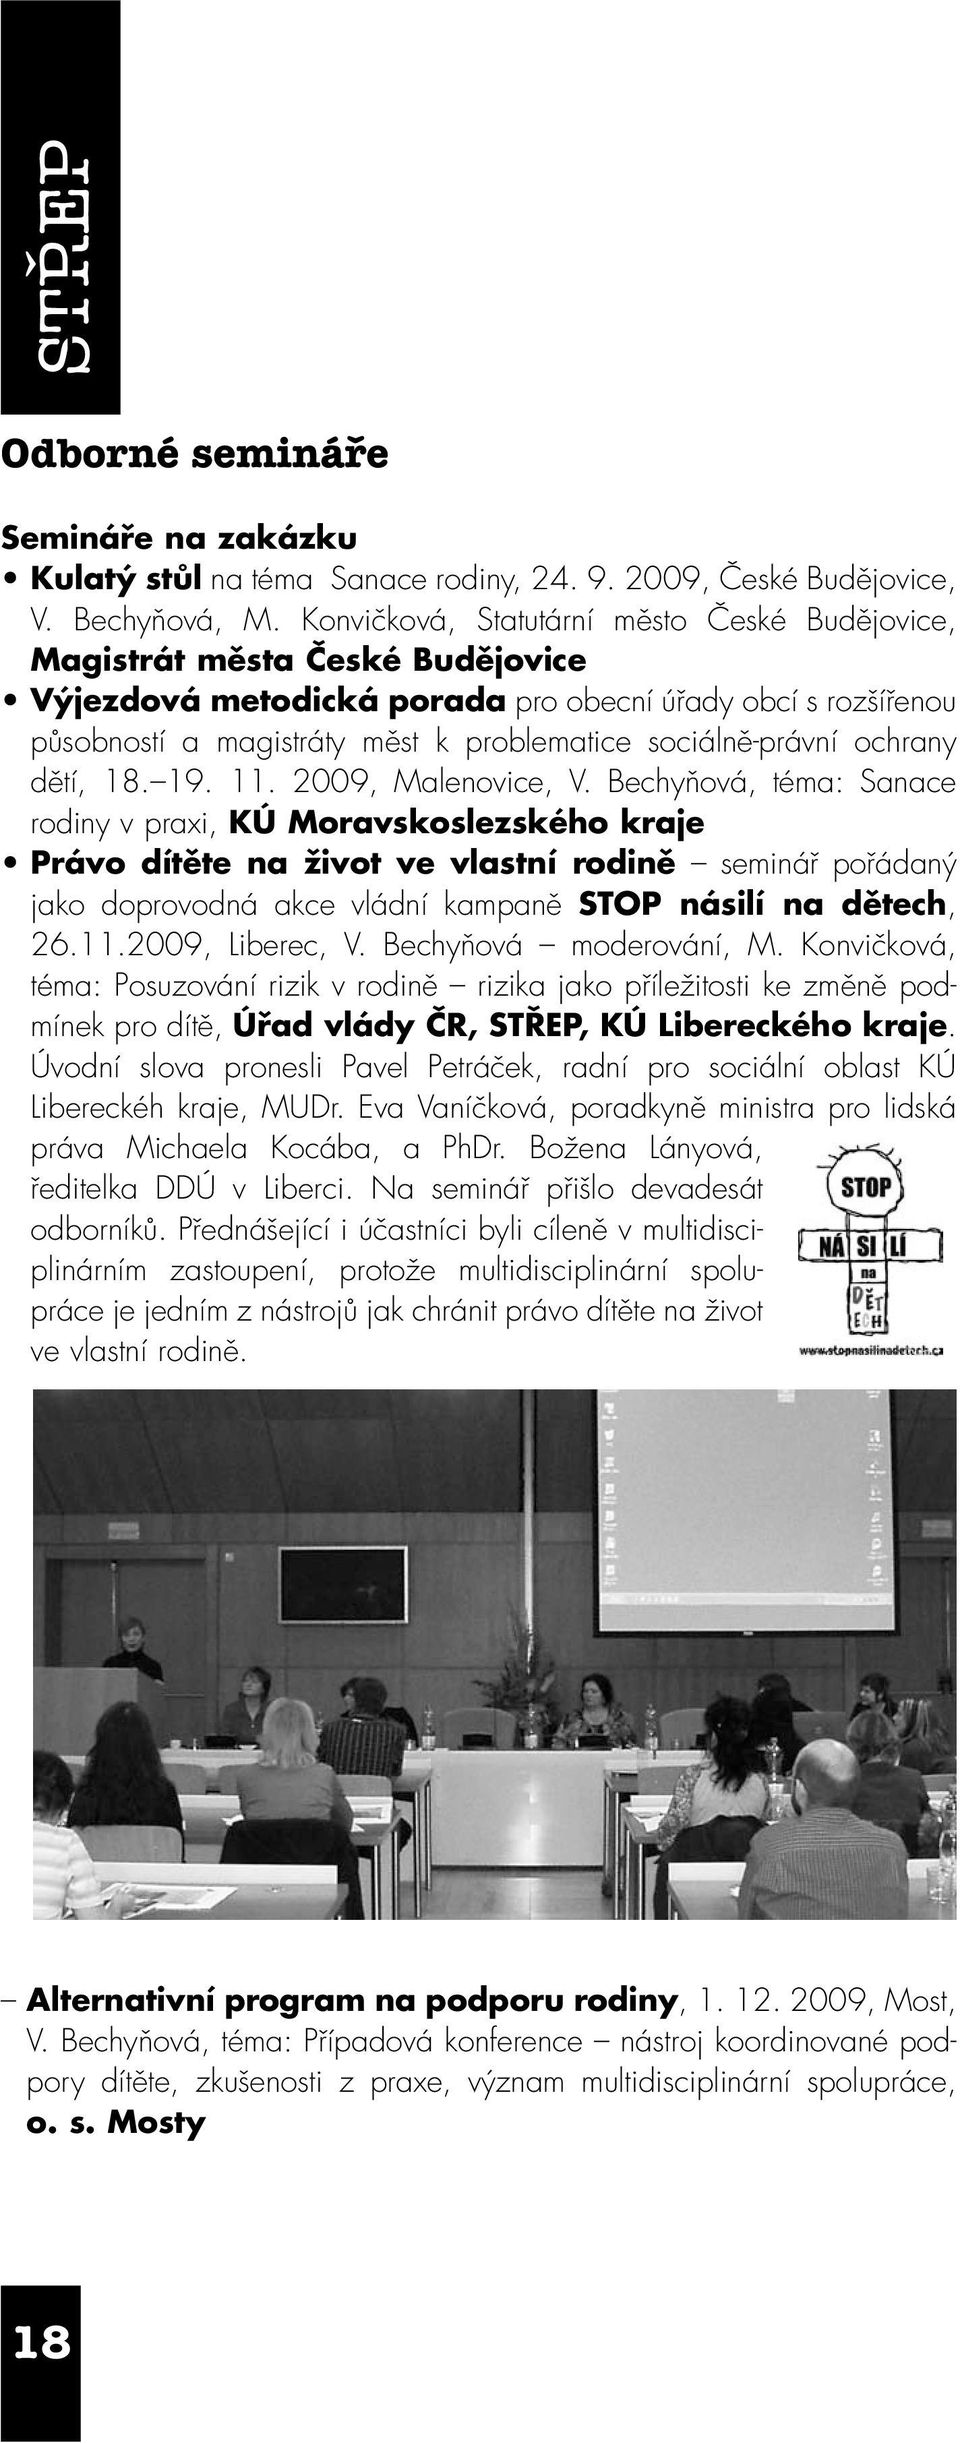 sociálně-právní ochrany dětí, 18. 19. 11. 2009, Malenovice, V.